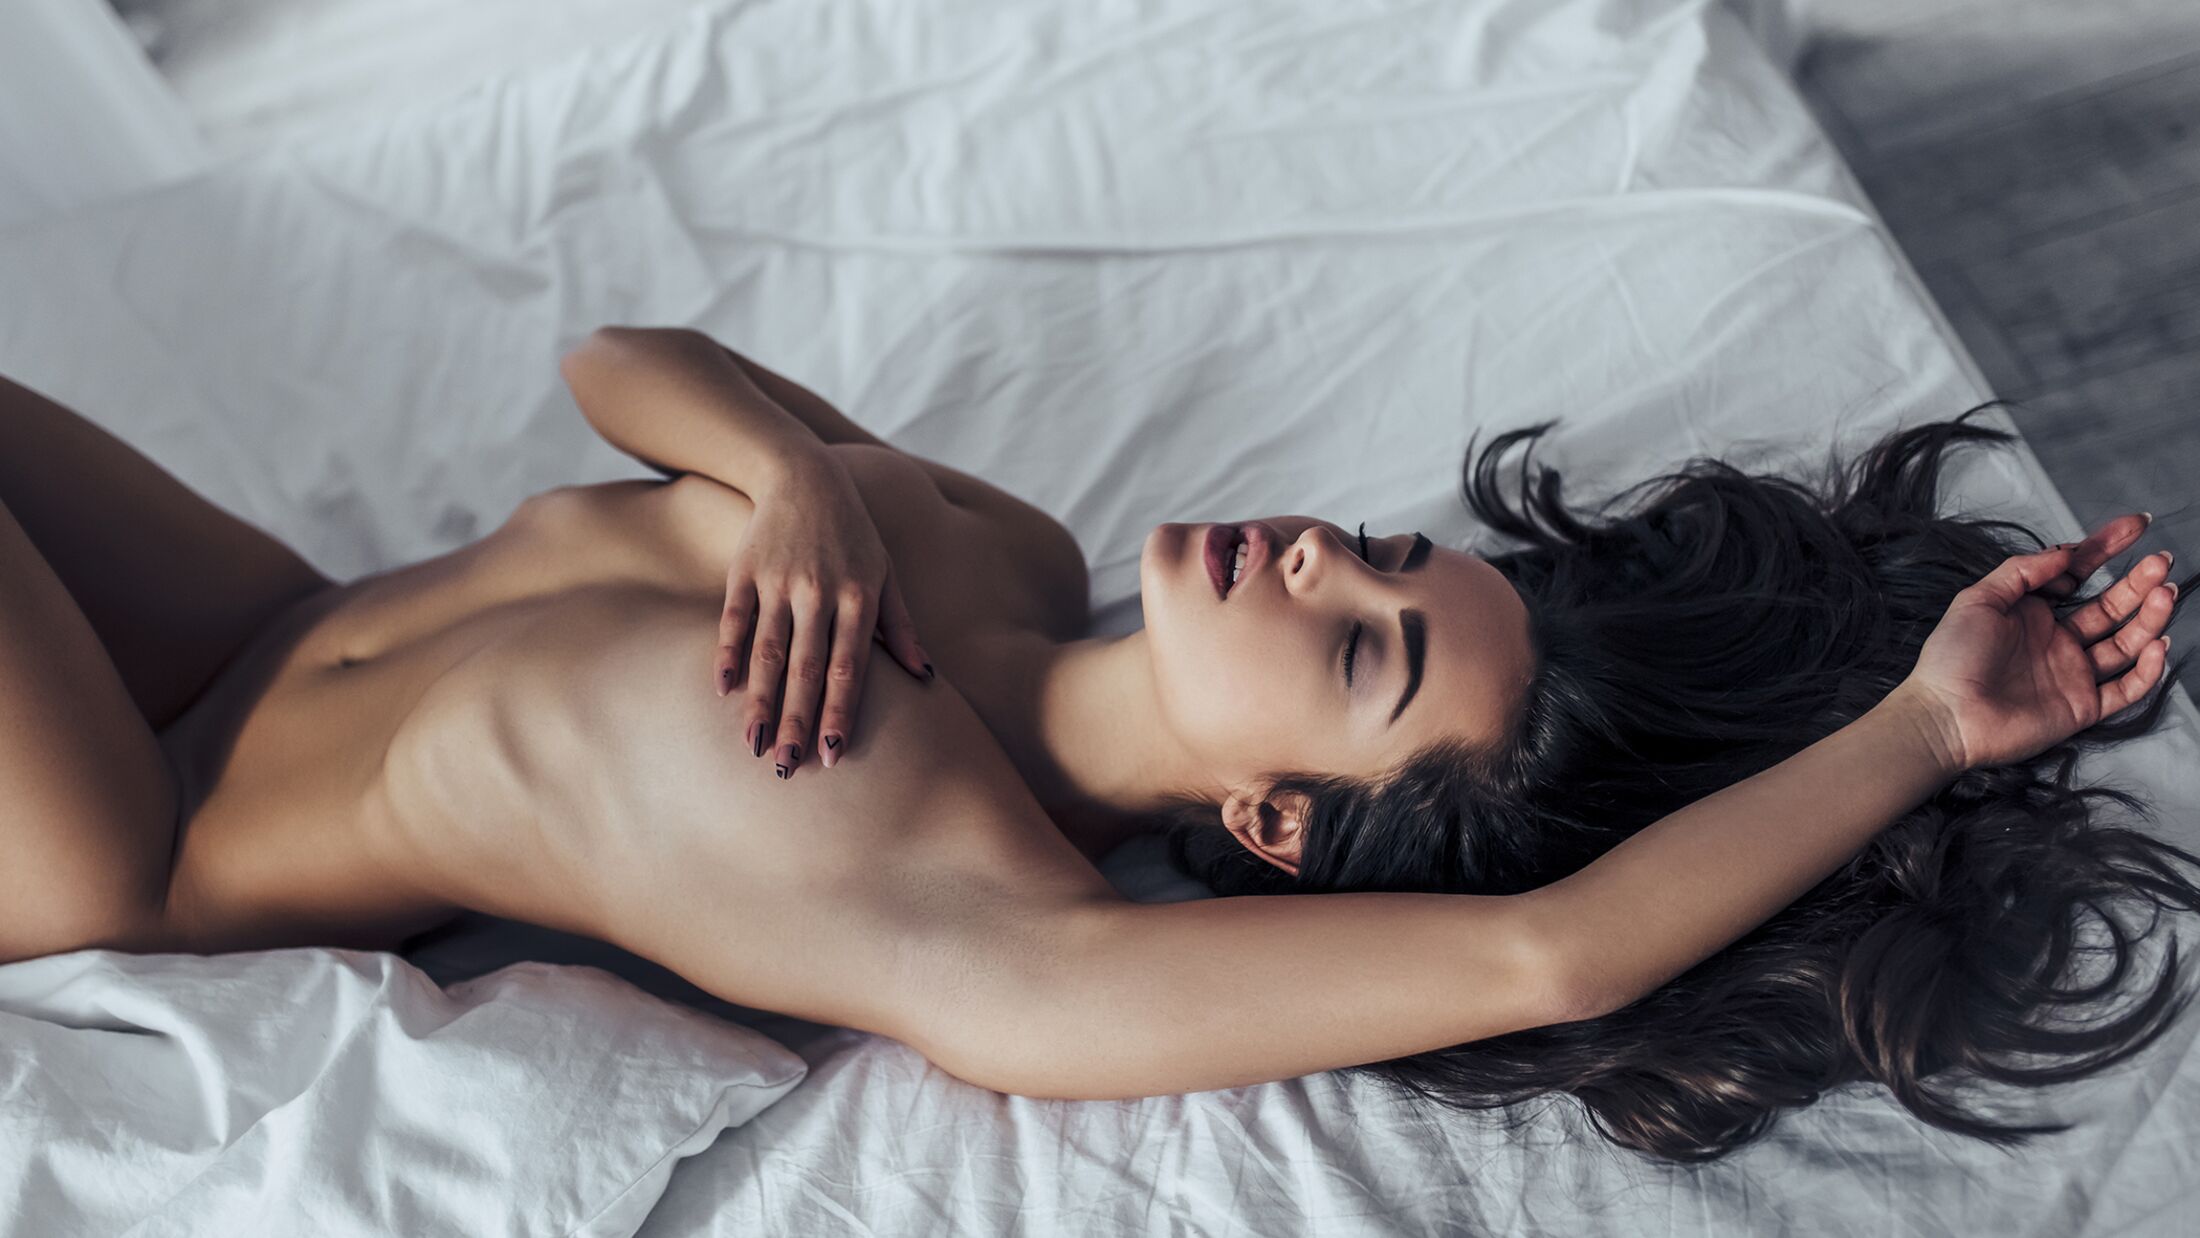 Sexfantasien 7 Top-Fantasien der Frauen MENS HEALTH Bild